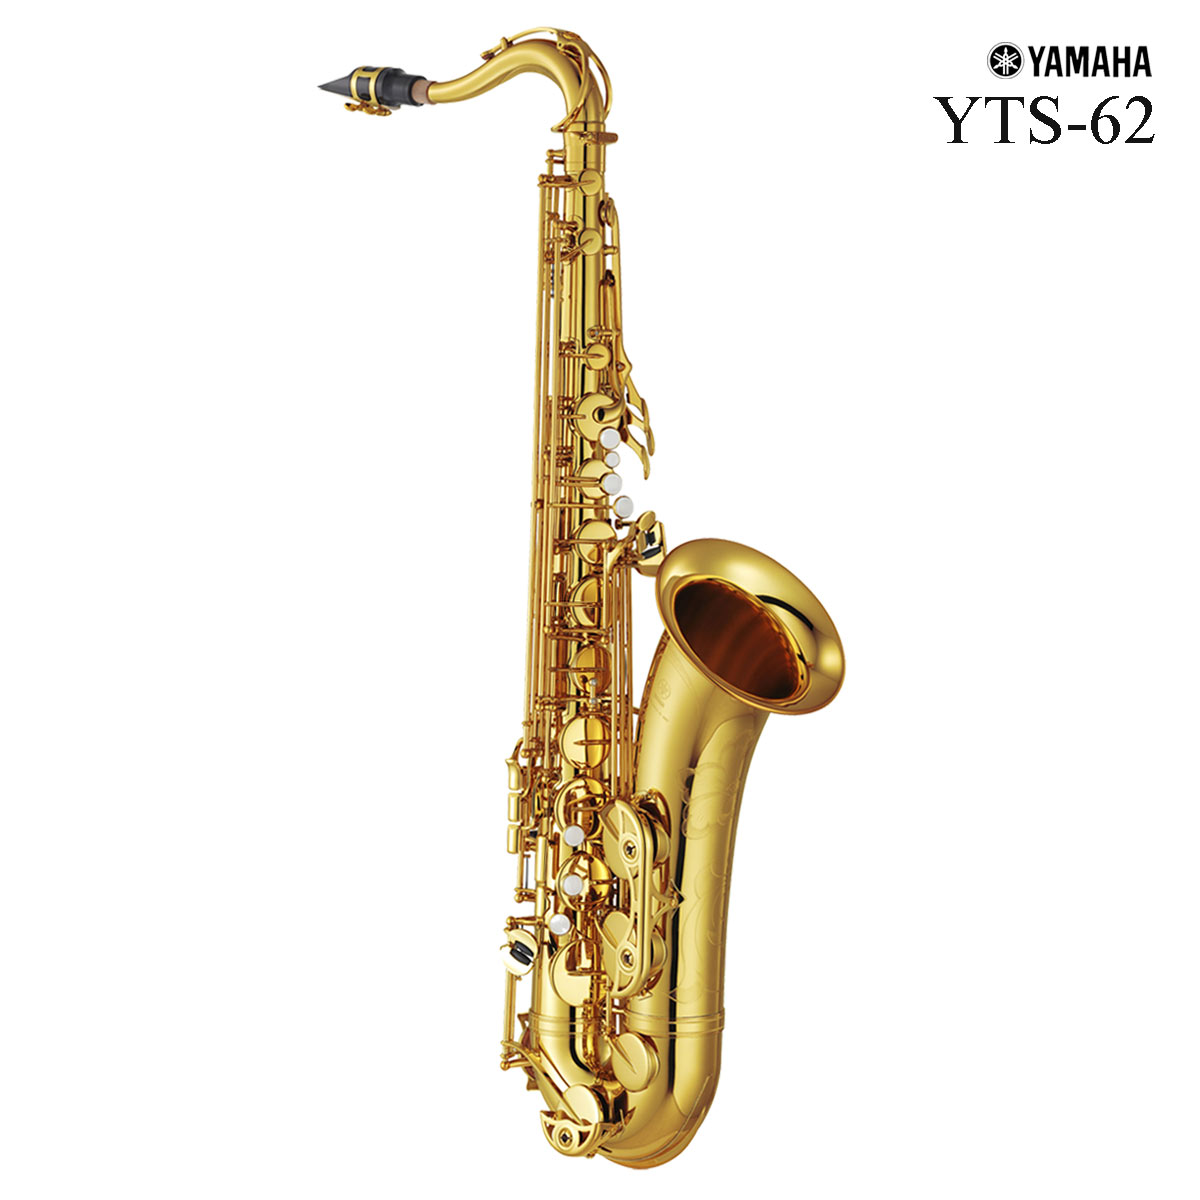 YTS-62 / 長年愛されている定番モデル ある程度の自由度はありつつも、素直で音程の正確さにも優れいている「62シリーズ」。 時代の変化に対応すべくマイナーチェンジを繰り返し、4代目まで発売される人気シリーズです。 吹奏楽やクラシック、アンサンブルなどでは安定したパフォーマンスと充実の響きが得られ、 jazz・POPS向けのマウスピースを使えば顕著にマウスピースの特長を表現することが出来ます。 安定性を兼ね備えいているのでアドリブなどの演奏に集中出来る頼もしさもあります。 コストパフォーマンスの面でも「世界一のヤマハサックス」という評価はしばらく揺るがないポテンシャルの高さです。 主な特徴 ・62専用ネック採用：新規開発した62 専用ネックを搭載。正確な音程感を持ちながら、62ならではの心地よい吹奏感と抵抗感を維持。 ・低音キイ新機構採用：Low B-C# キイの連結部分を新規設計。低音部から高音部まで全音域でムラのないスムースな吹奏感と音色を実現しました。 ・オリジナルデザインの手彫り彫刻：卓越した技をもつ匠による手彫り彫刻は新しいデザインに。美しい細かな紋様は高級感と魅力を向上させています。 ・一体座：複数の支柱をプレートに一体化させることにより、演奏時における適度な抵抗感と芯のある深い音色をもたらします。 ・ネックレシーバー：重量感のあるレシーバーを採用し、ネックと管体の一体感が増すことでより豊かな響きを実現しました。 ・硬質ニードルスプリング：バネ性に富んだ硬質鋼を使用しスムーズかつしなやかなキイアクションを実現しています。プレイヤーをより音楽表現に集中させてくれます。 ・3wayケース採用：新設計のセミハードタイプケースは、肩掛け、リュックタイプといった身体負担を軽減する持ち方ができ、サイドには譜面等も収納可能、より一層、機能性を高めました 主な仕様 調子：B♭ 仕上げ：ゴールドラッカー ベル：2枚取り 手彫り彫刻 High F♯、フロントF付 可動式指掛け 分割キイガード シーソーキイ 付属品 セミハードケース マウスピース マウスピースキャップ リガチャー リード1枚 エンドプラグ ストラップ クリーニングクロス 取扱説明書 メーカー保証書 ●イシバシ楽器 5年保証■■付属品■■ 専用ケース マウスピース マウスピースキャップ リガチャー リード1枚 エンドプラグ（ネックジョイント部保護キャップ） ストラップ クリーニングクロス 取扱説明書 メーカー保証書 イシバシ楽器5年保証